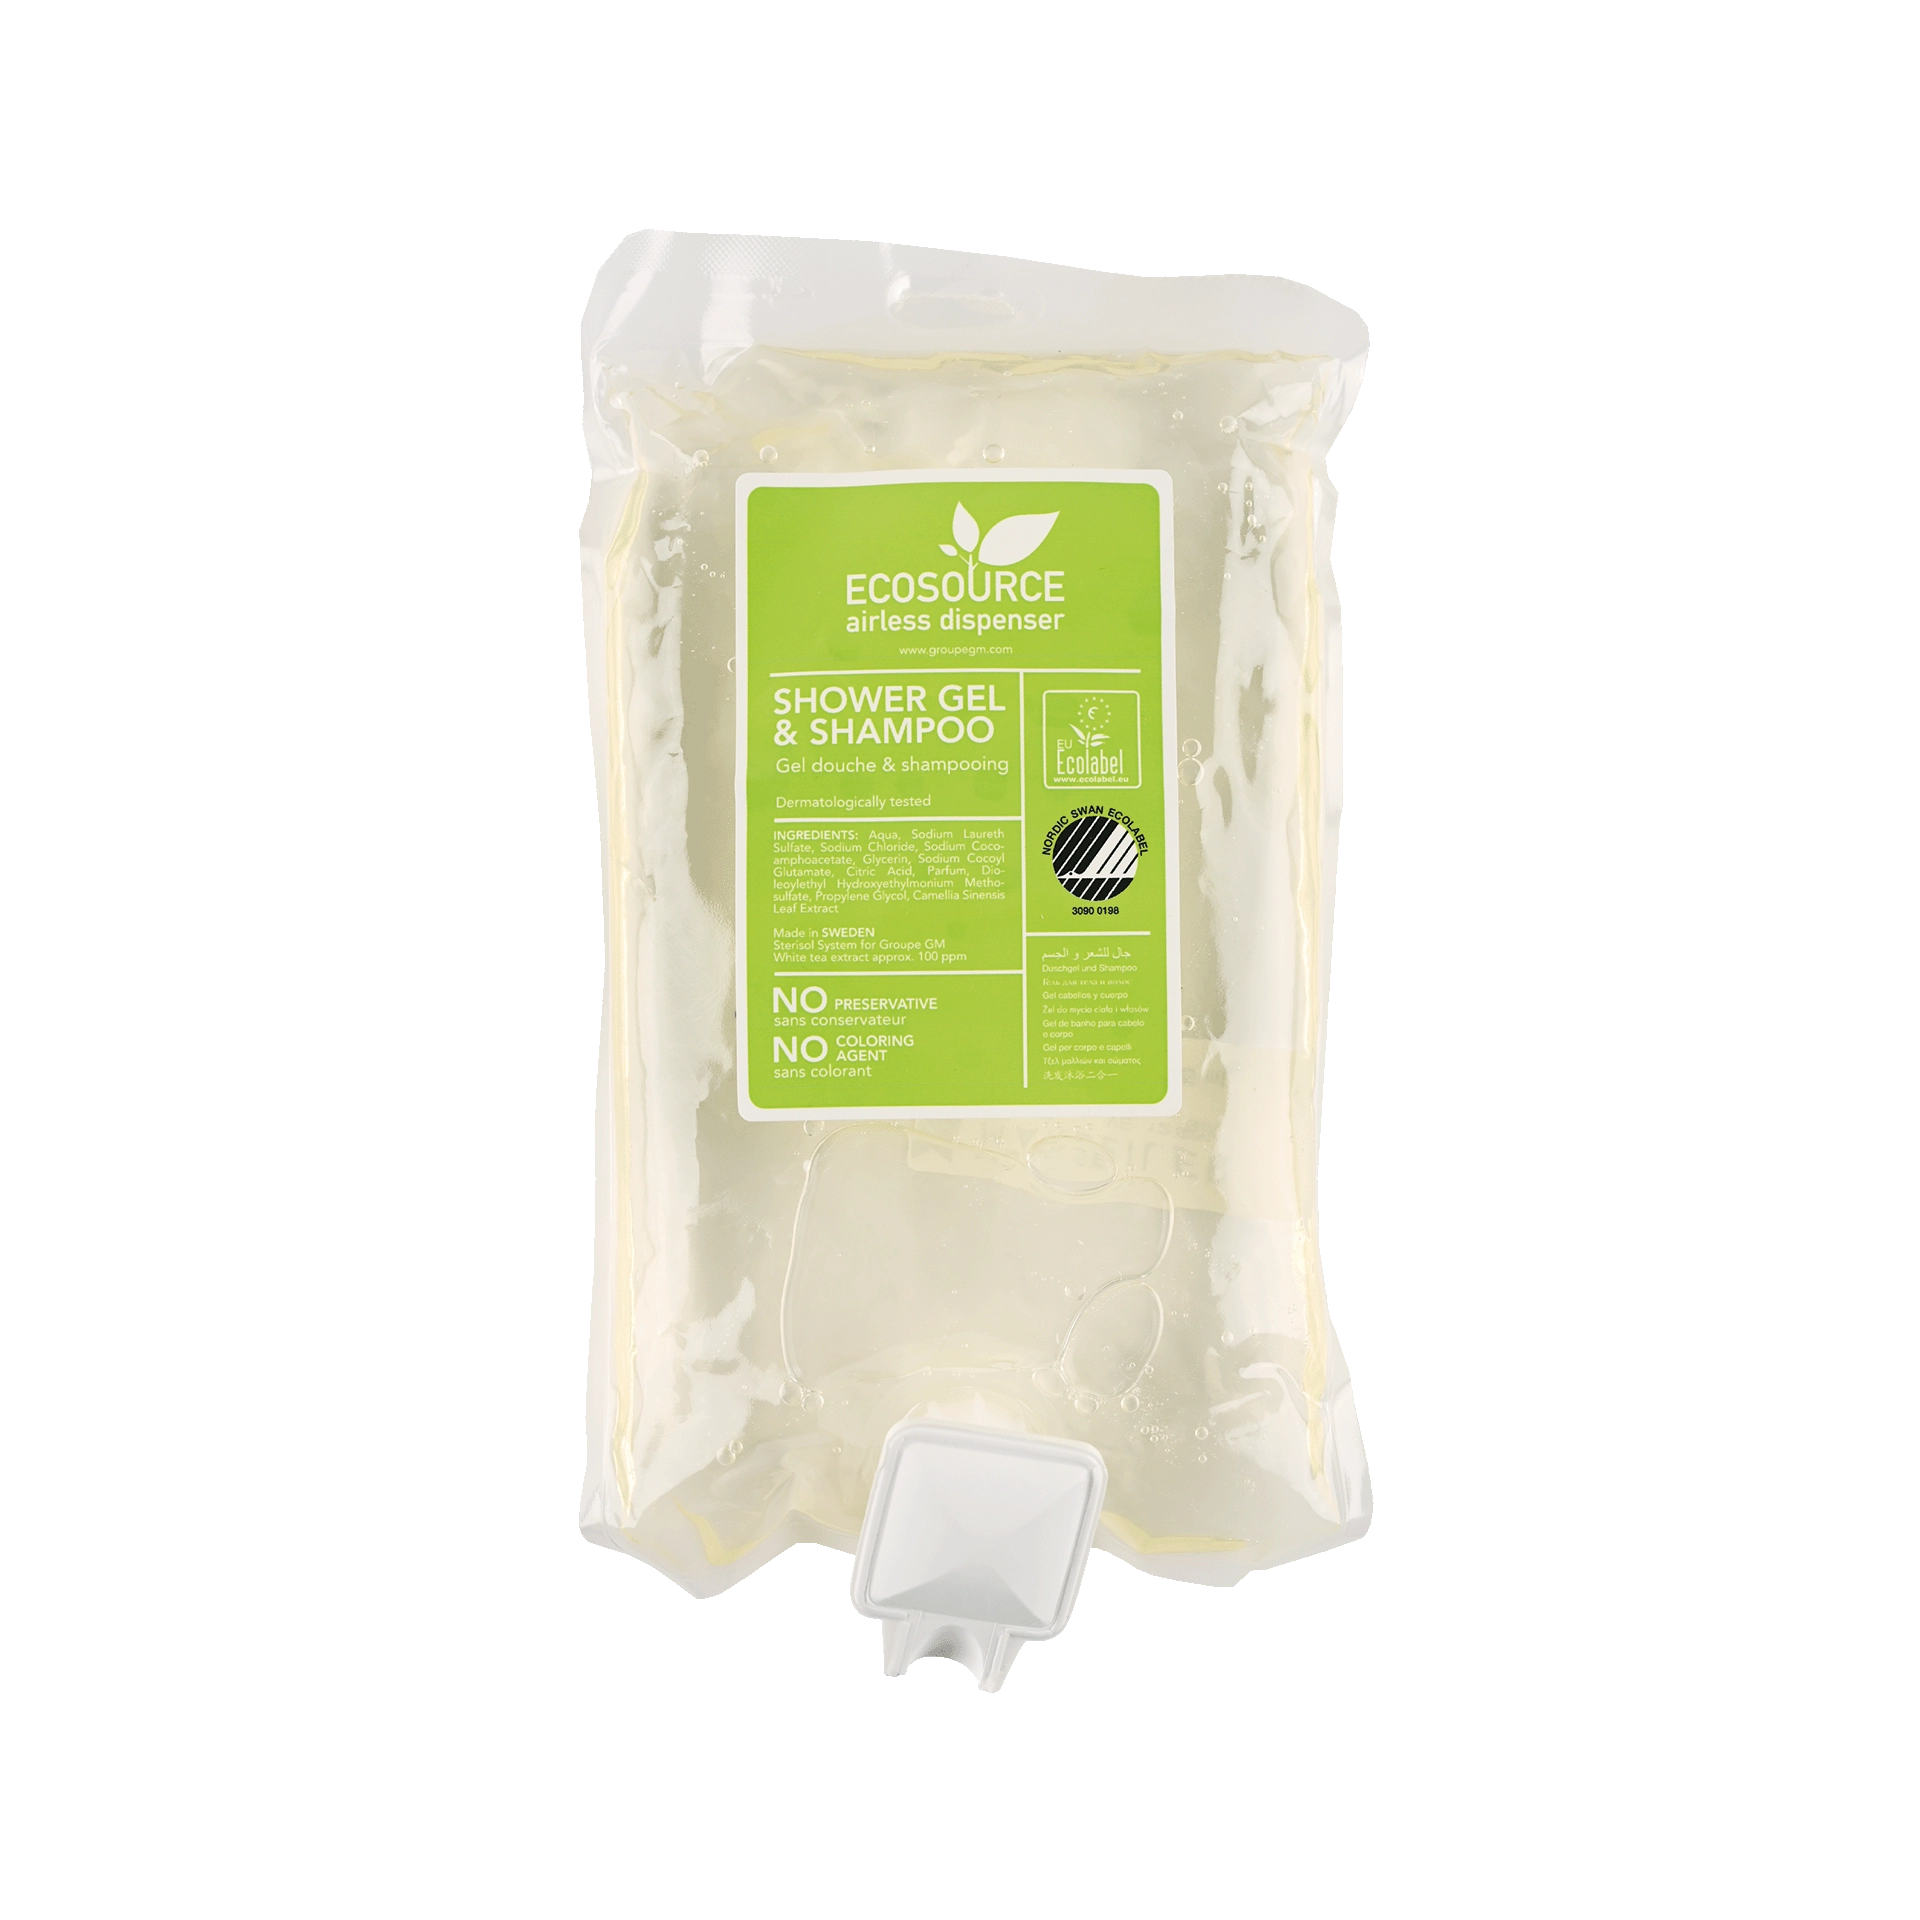 Bagnodoccia/shampoo | Tè Verde Ecosource ricarica | 375 ml 